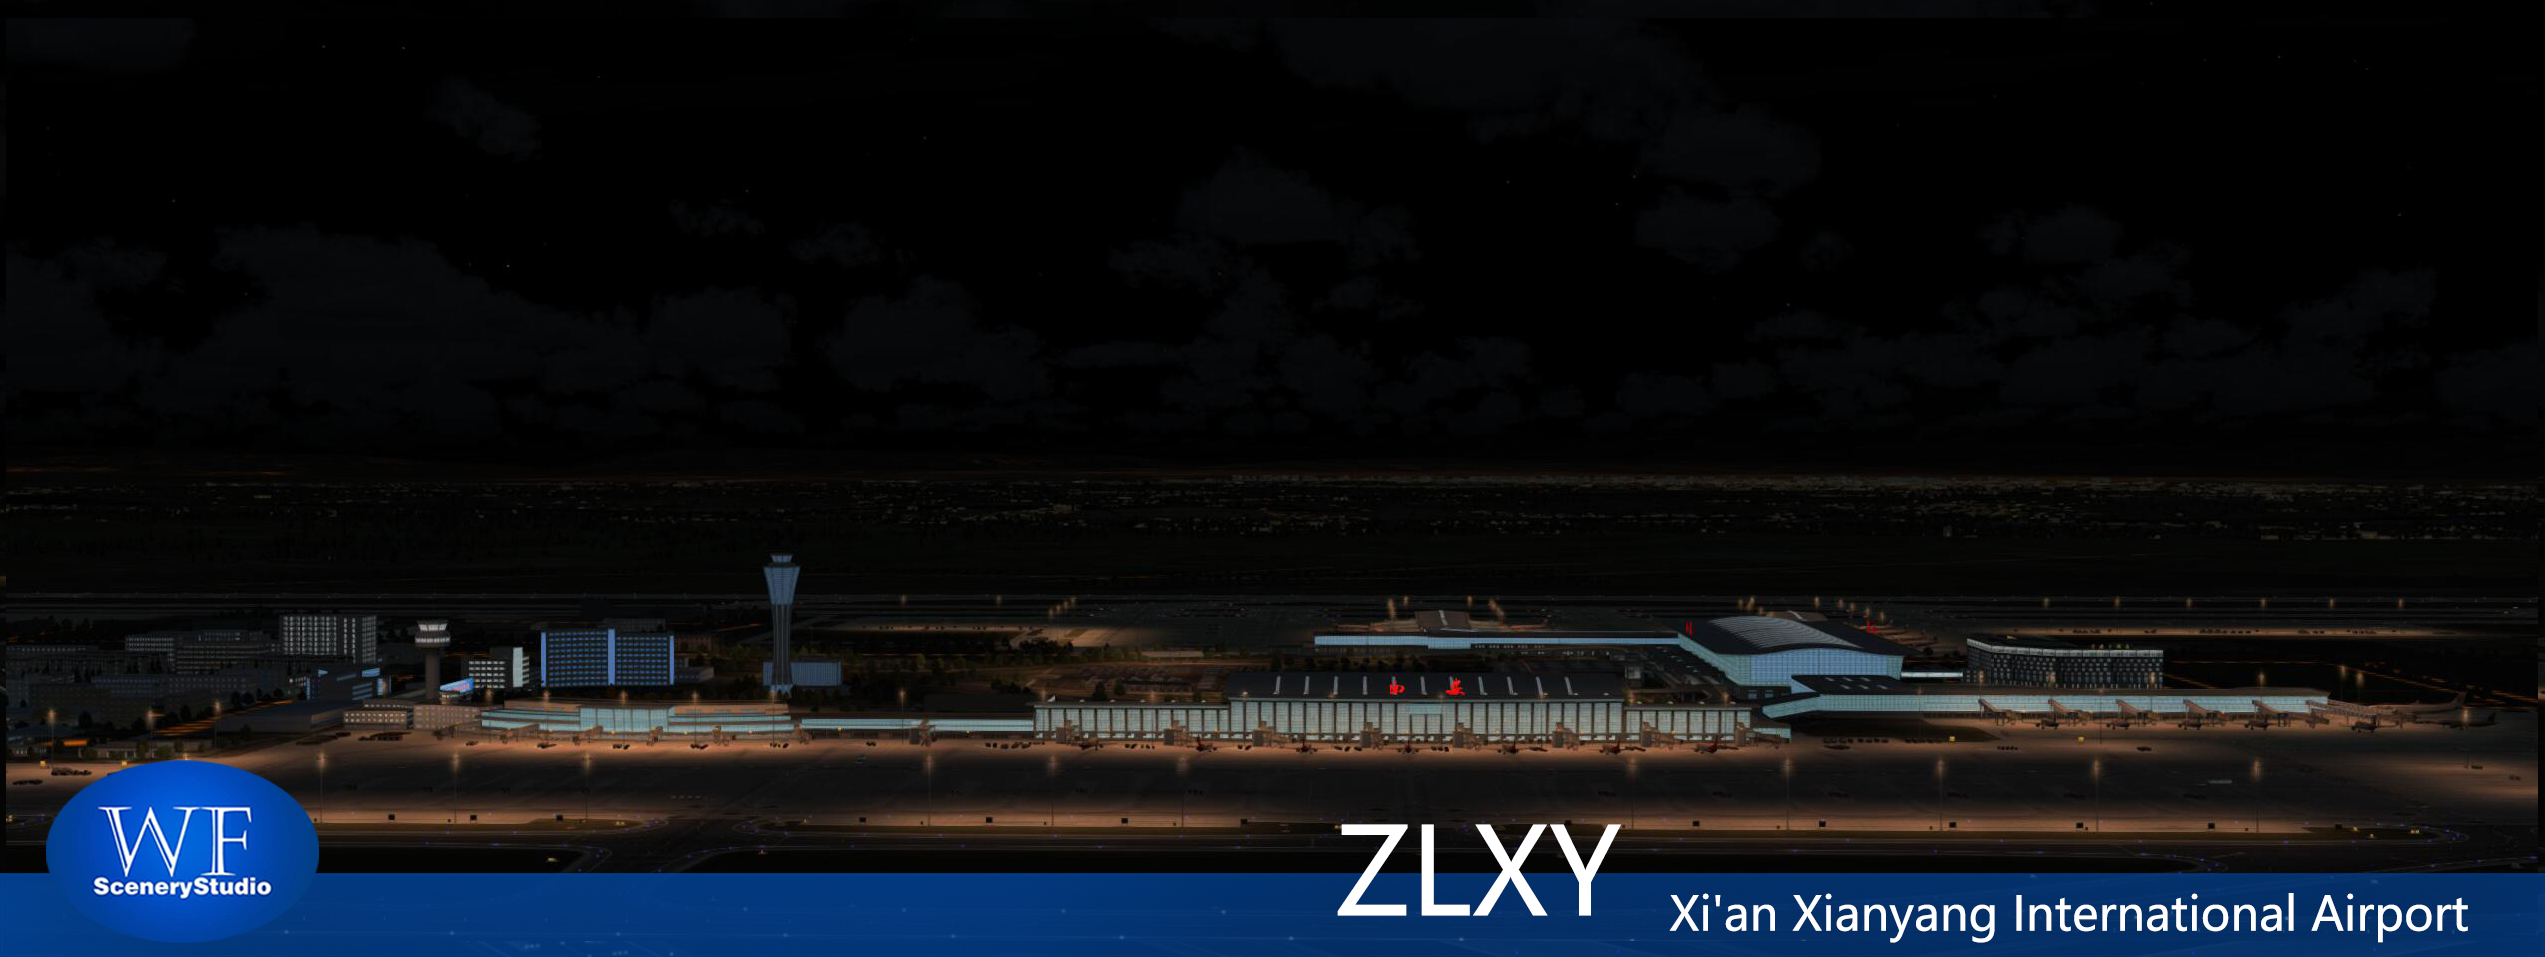 西安咸阳国际机场发布-2116 